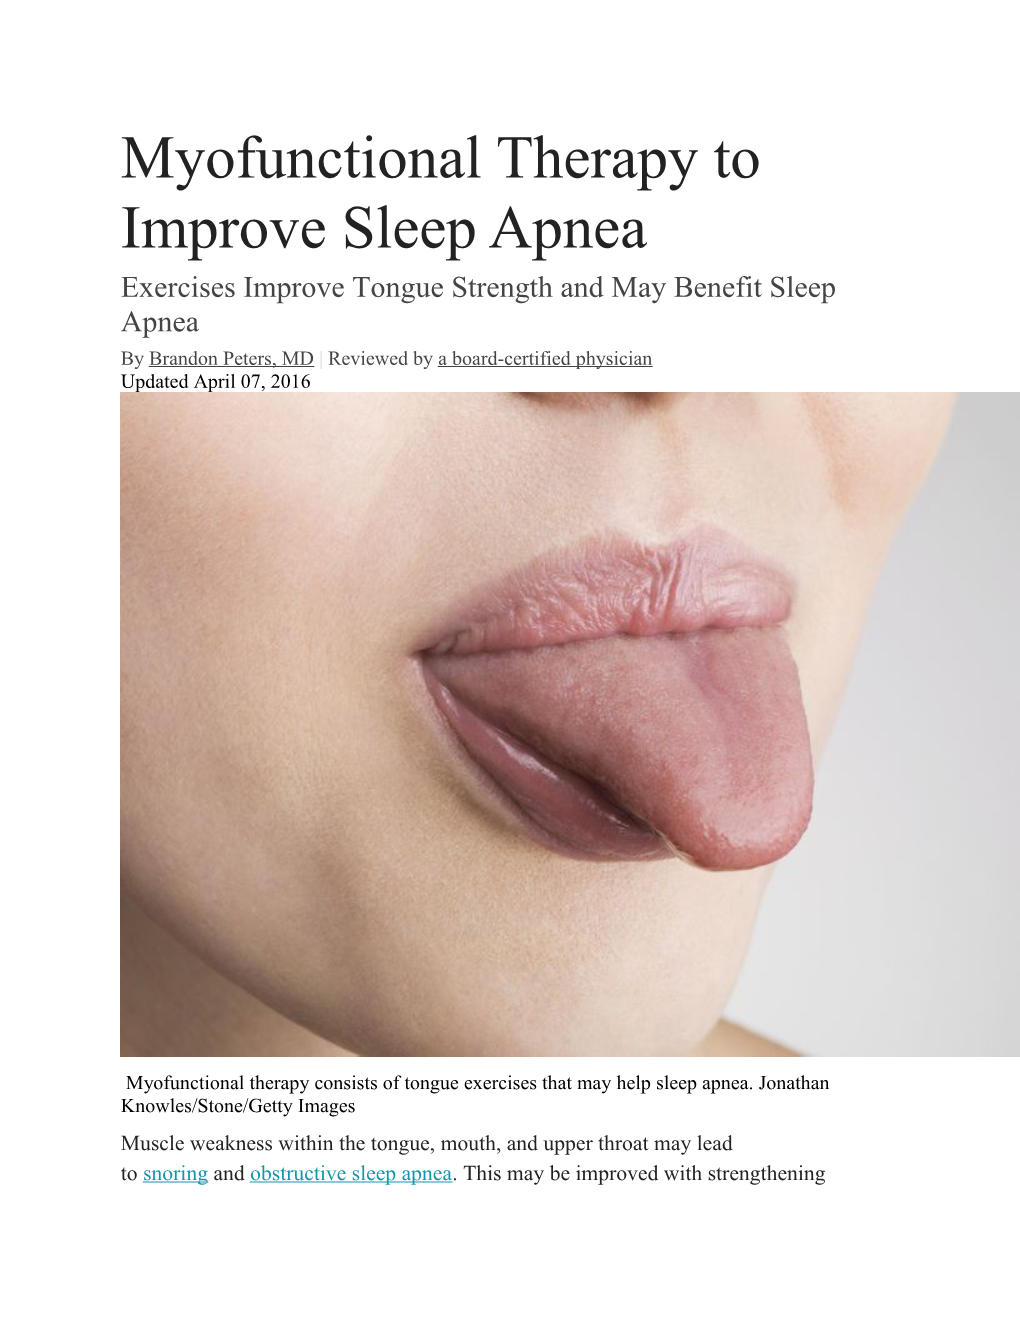 Myofunctional Therapy to Improve Sleep Apnea